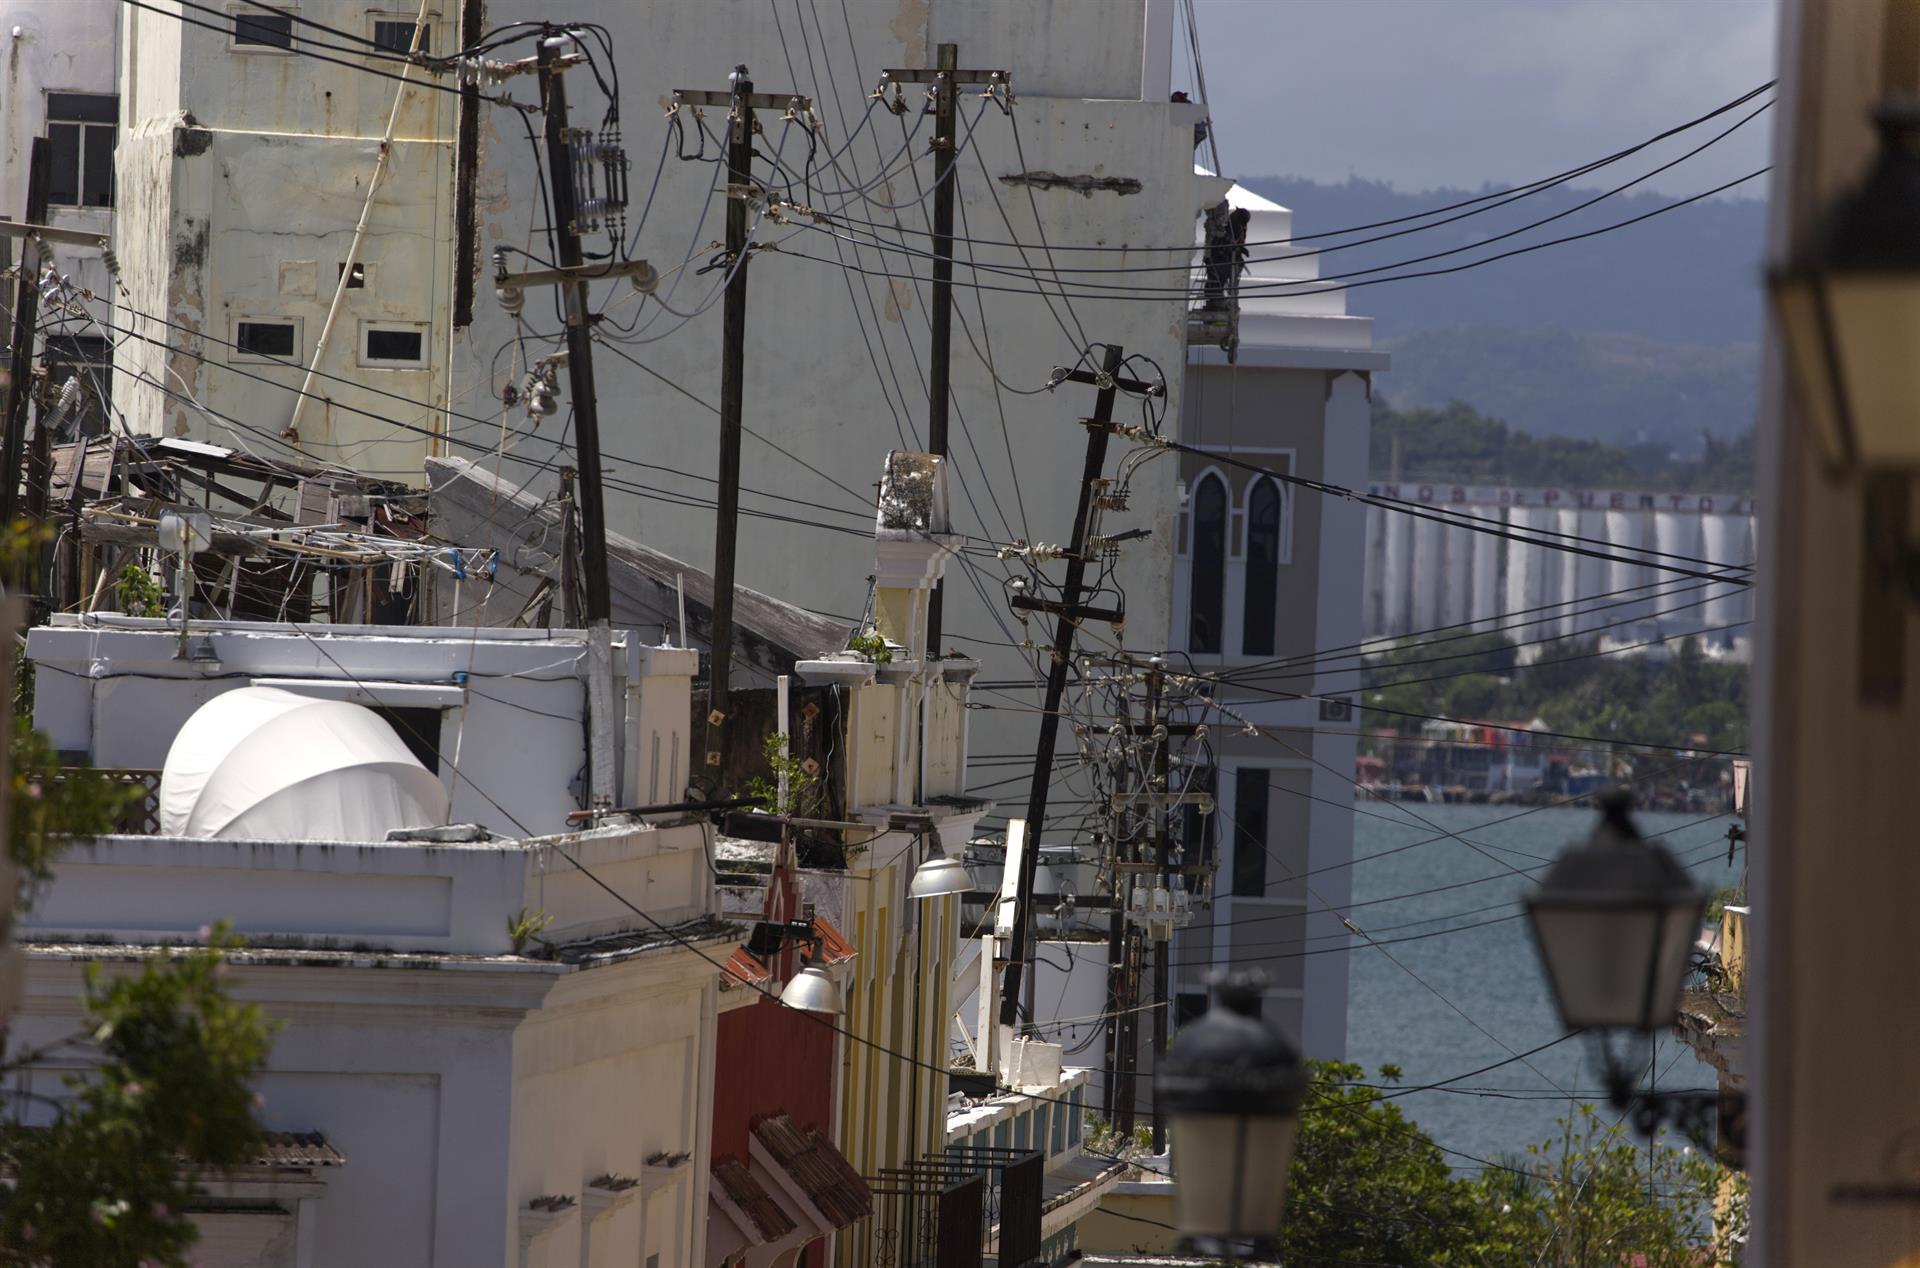 Fotografía donde se aprecia el estado del tendido eléctrico en una calle del Viejo San Juan, el casco histórico de San Juan de Puerto Rico. Imagen de archivo. EFE/ Thais Llorca
